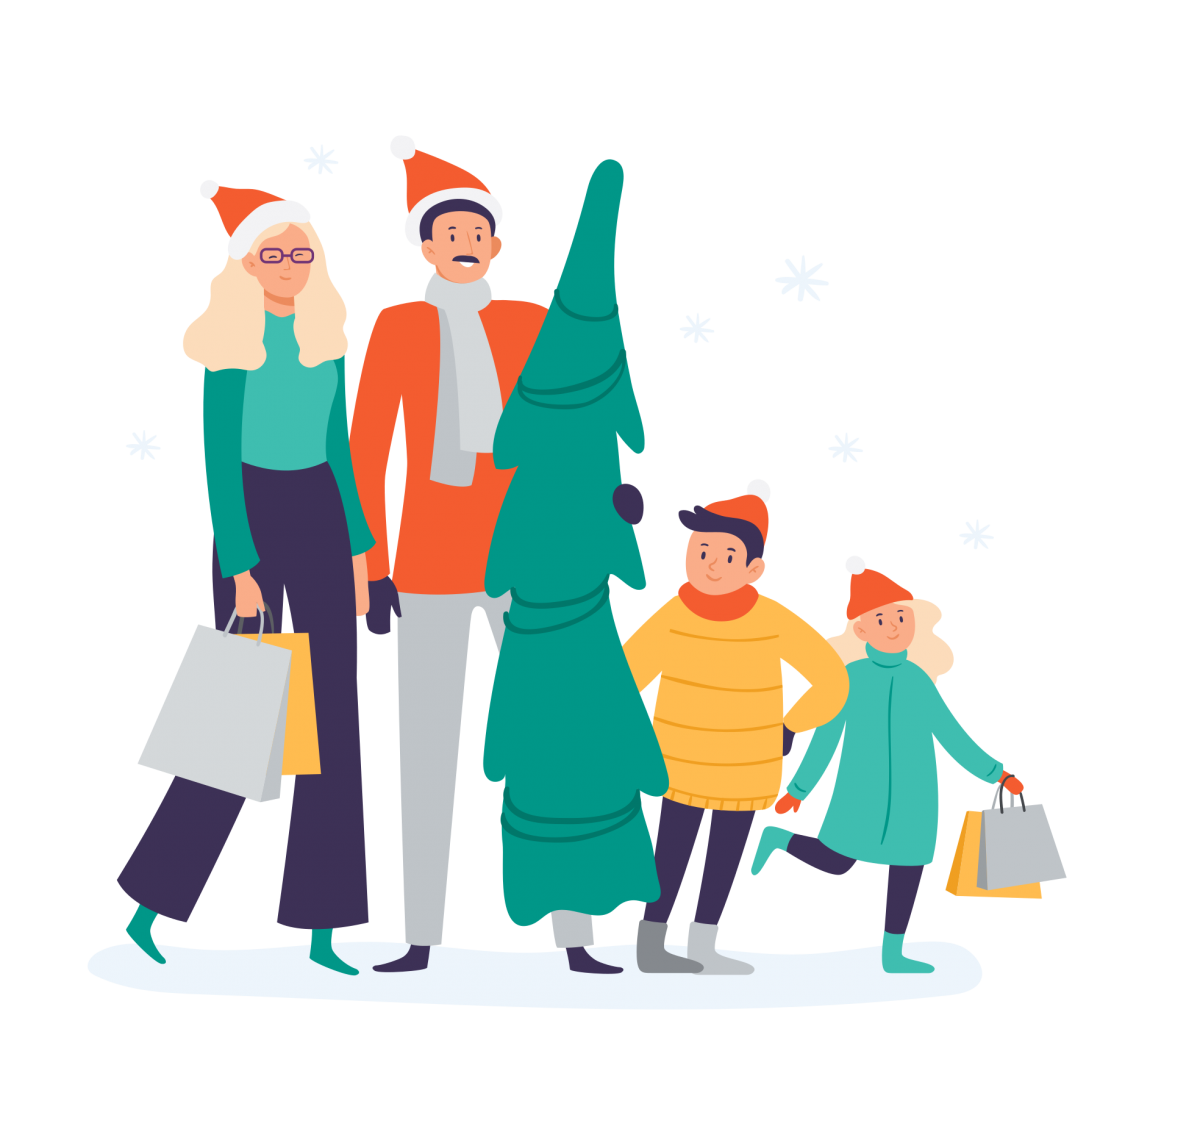 Eine Illustration einer Familie, die mit Weihnachtsbaum vom Einkaufen zurückkommt.